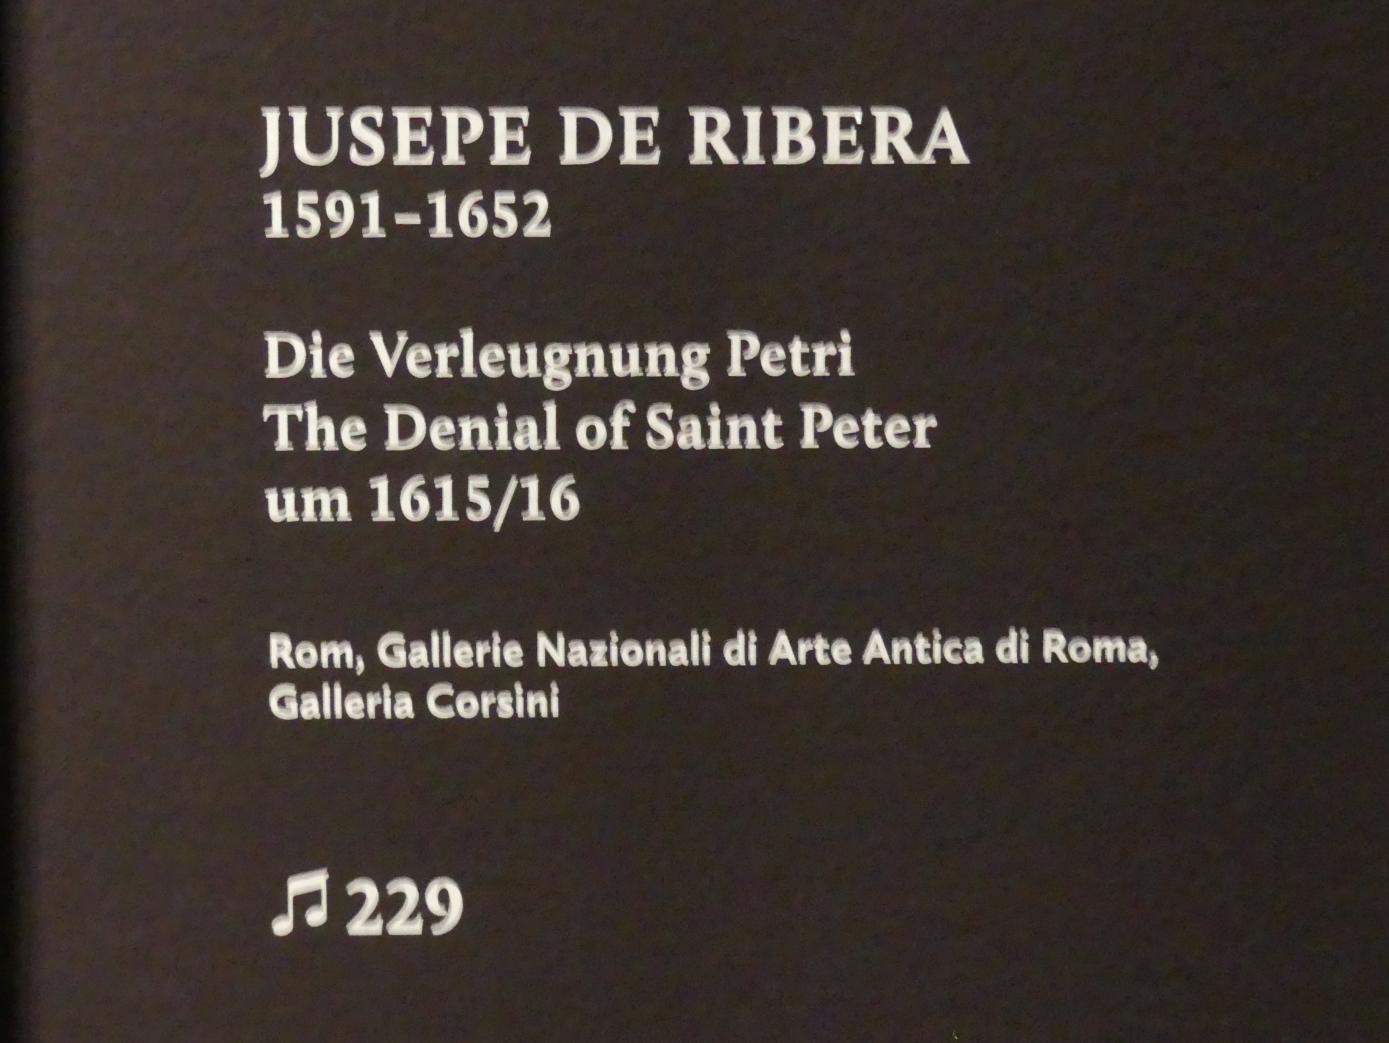 Jusepe de Ribera (1607–1650), Die Verleugnung Petri, München, Alte Pinakothek, Ausstellung "Utrecht, Caravaggio und Europa" vom 17.04.-21.07.2019, Heilige: Verleugnung Petri, um 1615–1616, Bild 2/2